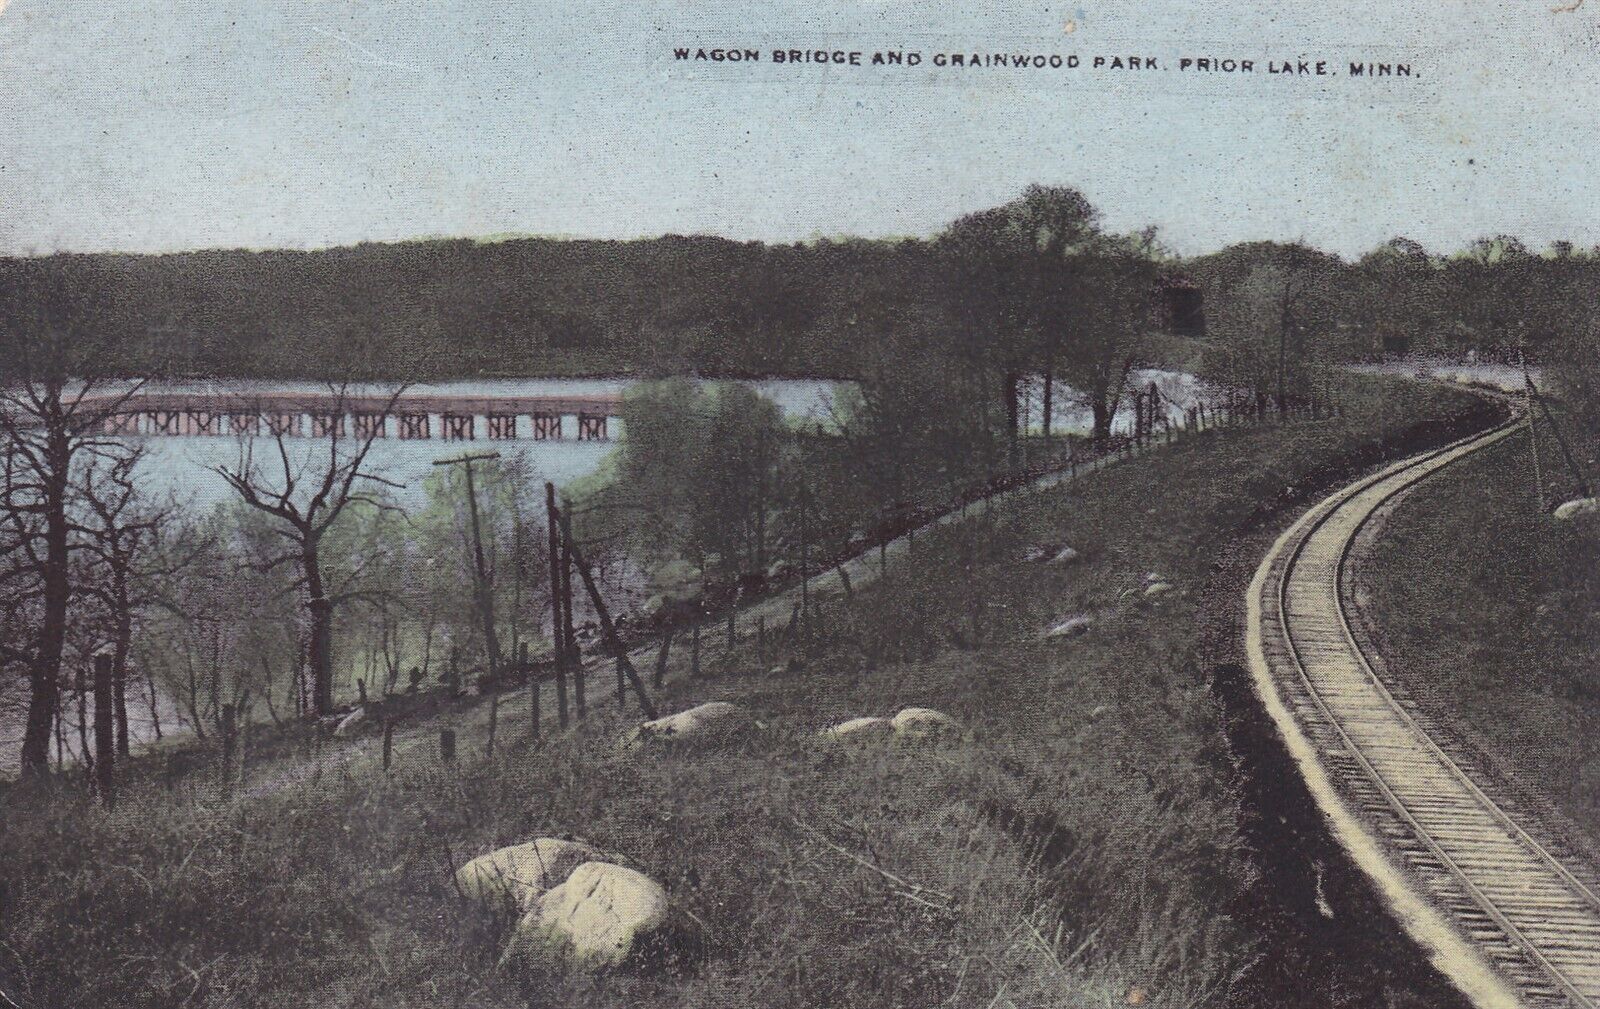 Prior Lake, MN - Wagon Bridge and Grainwood Park